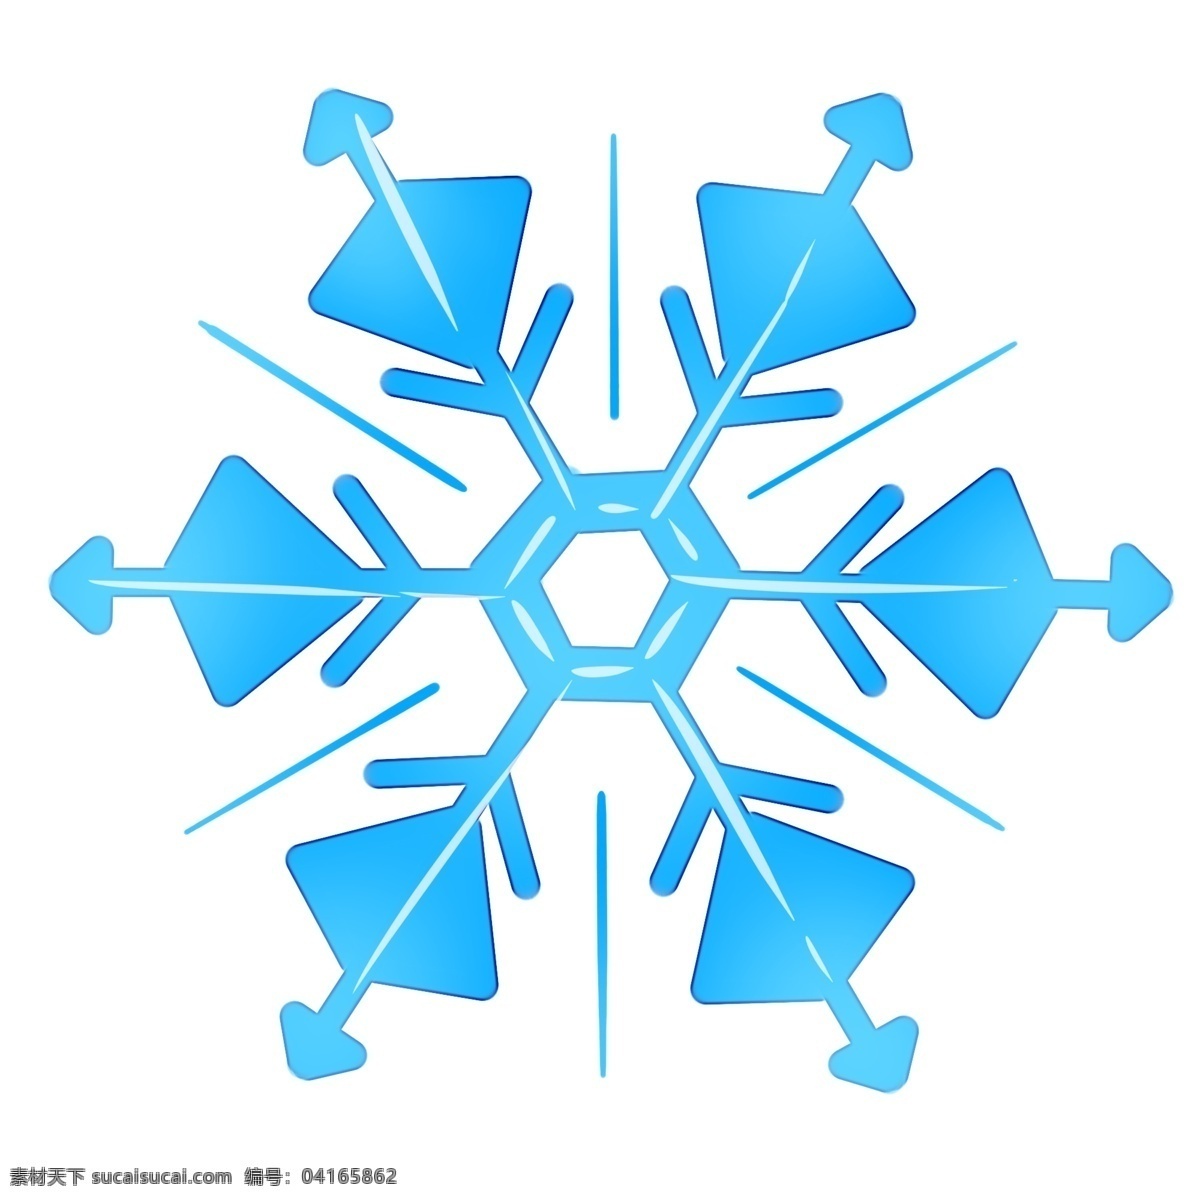 冬日 大雪 晶莹 雪花 冬天下雪 雪花的形状 蓝色雪花 晶莹雪花 亮晶晶的雪花 原创雪花图形